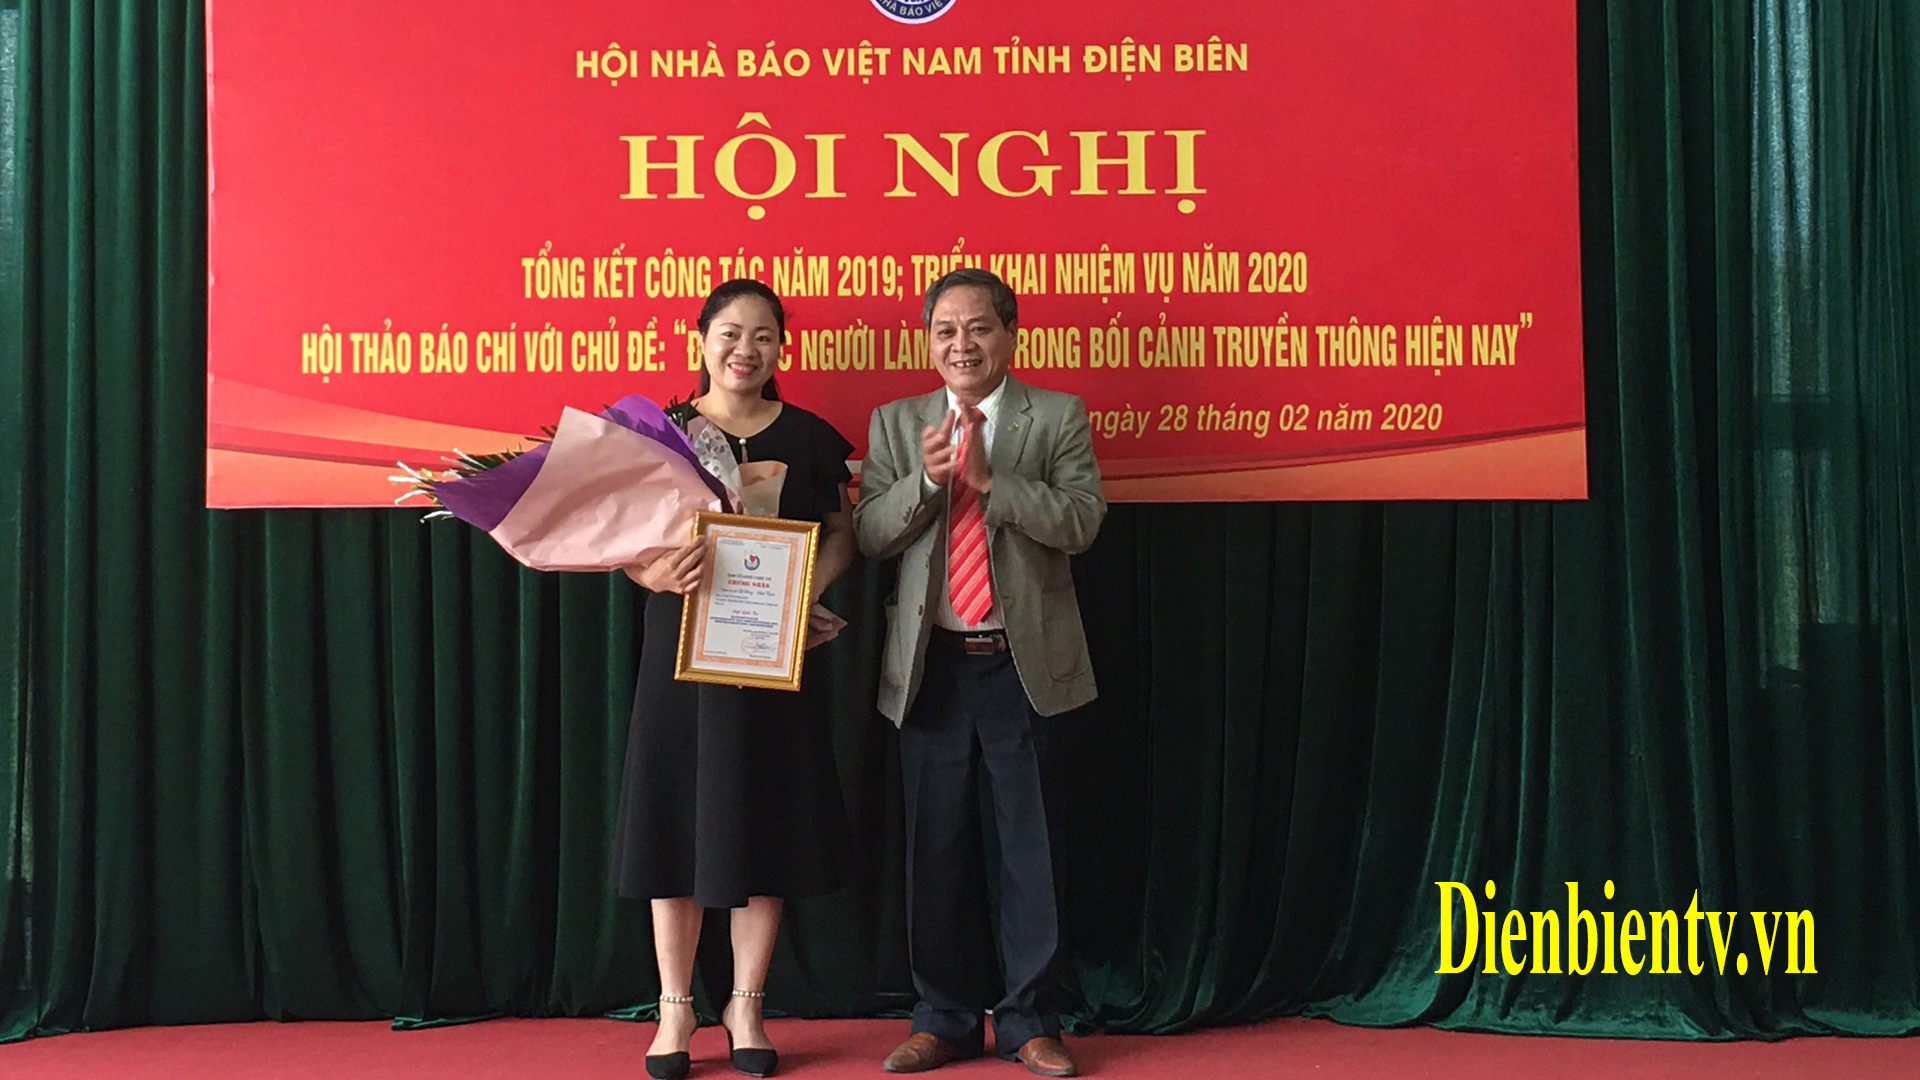 Chủ tịch Hội nhà báo tỉnh Điện Biên trao giải tác phẩm đạt giải trong cuộc thi báo chí Kỷ niệm 65 năm Chiến thắng Điện Biên Phủ.